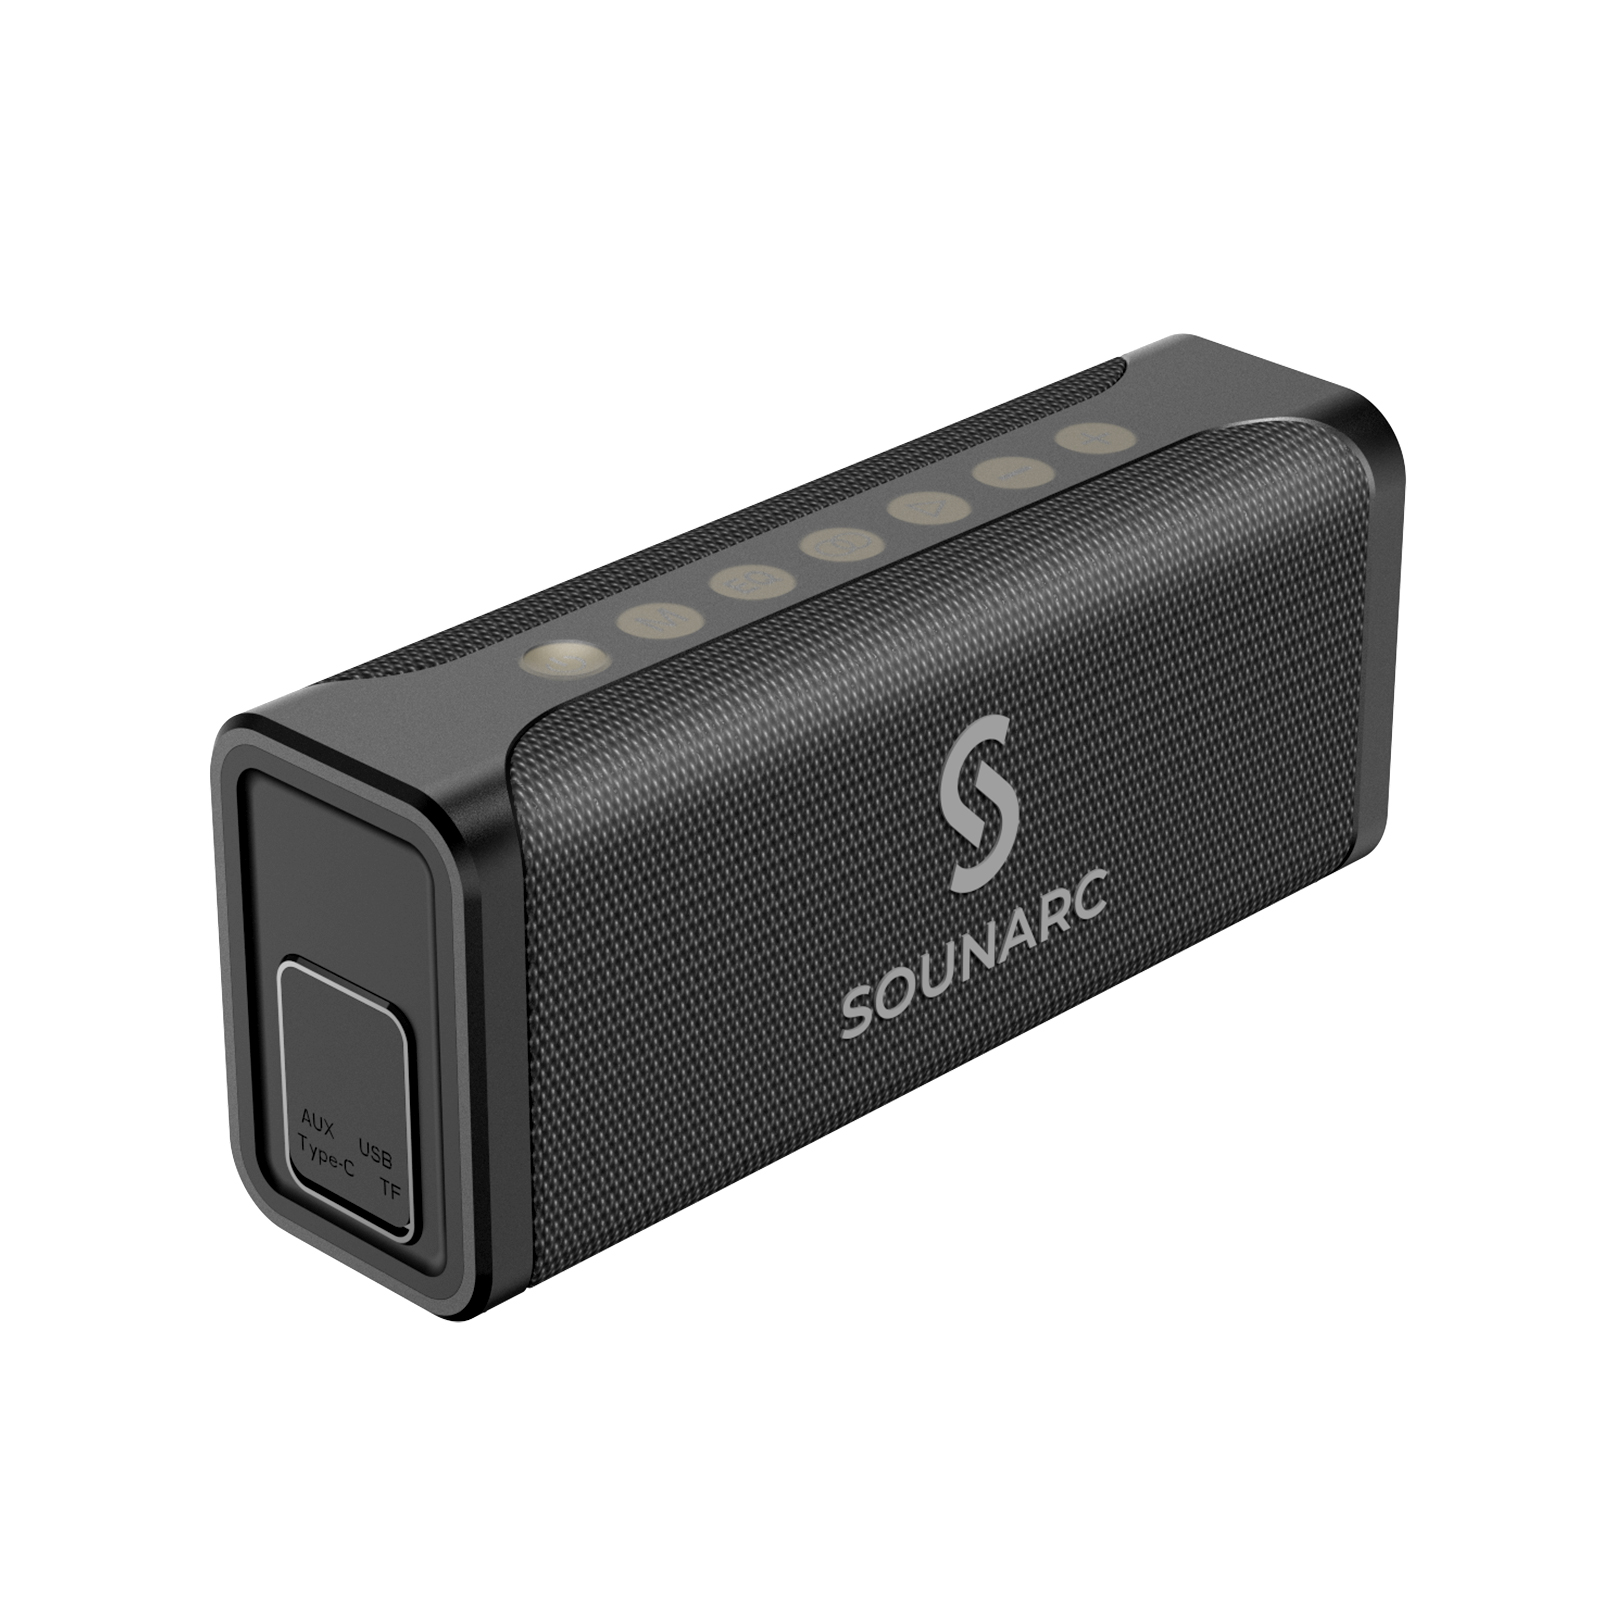 Loa Karaoke Bluetooth 5.0 Sounarc M1 + 2 Micro Không dây | Âm thanh nổi 80W mạnh mẽ | Pin 8000mAh tích hợp, Chống Nước IPX6 Hỗ Trợ Thẻ TF, Micro, AUX - Hàng chính hãng